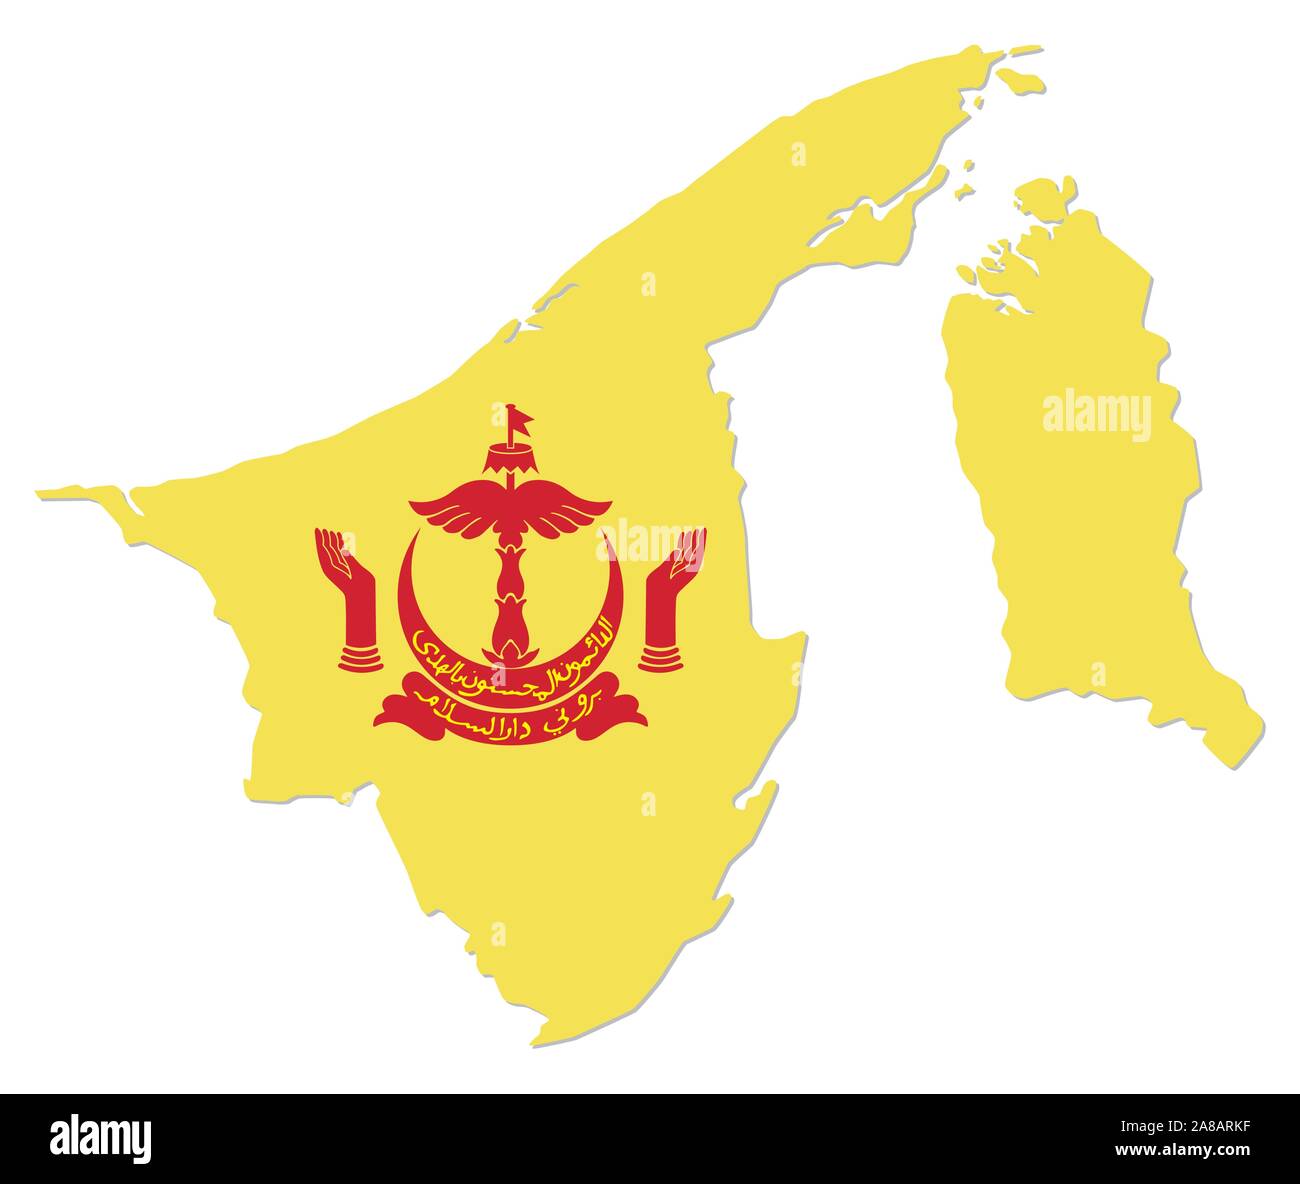 Einfache Karte von asiatischen Staat Brunei Darussalam mit Wappen Stock Vektor